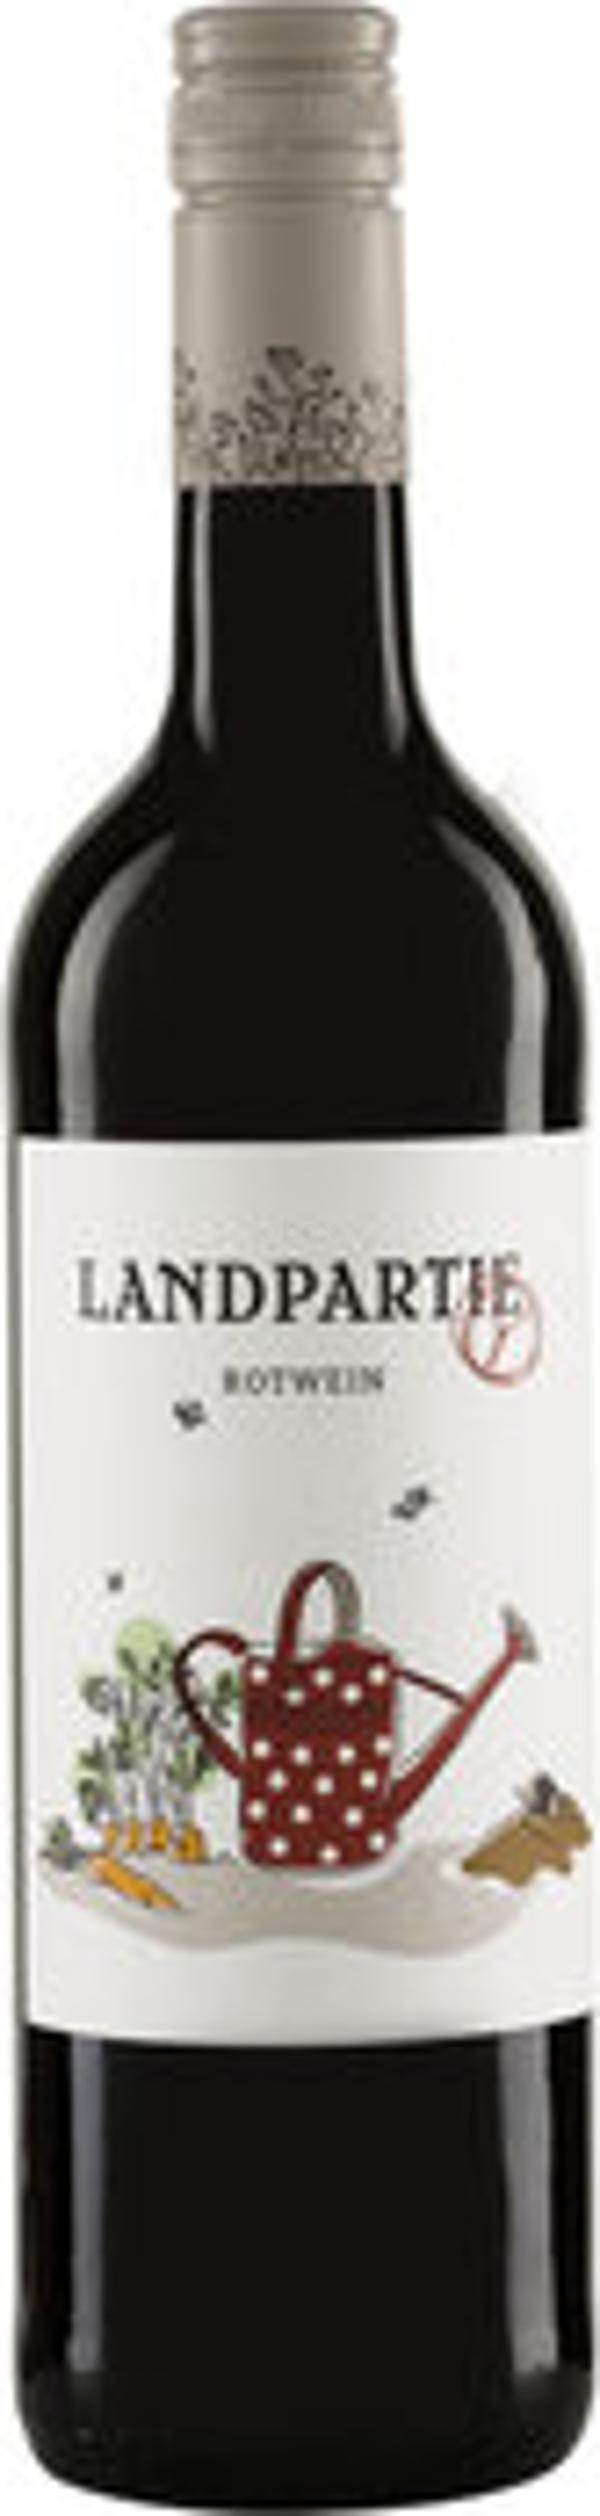 Produktfoto zu Landpartie Rotwein Deutscher Landwein 10,6.%vol. 0,75l